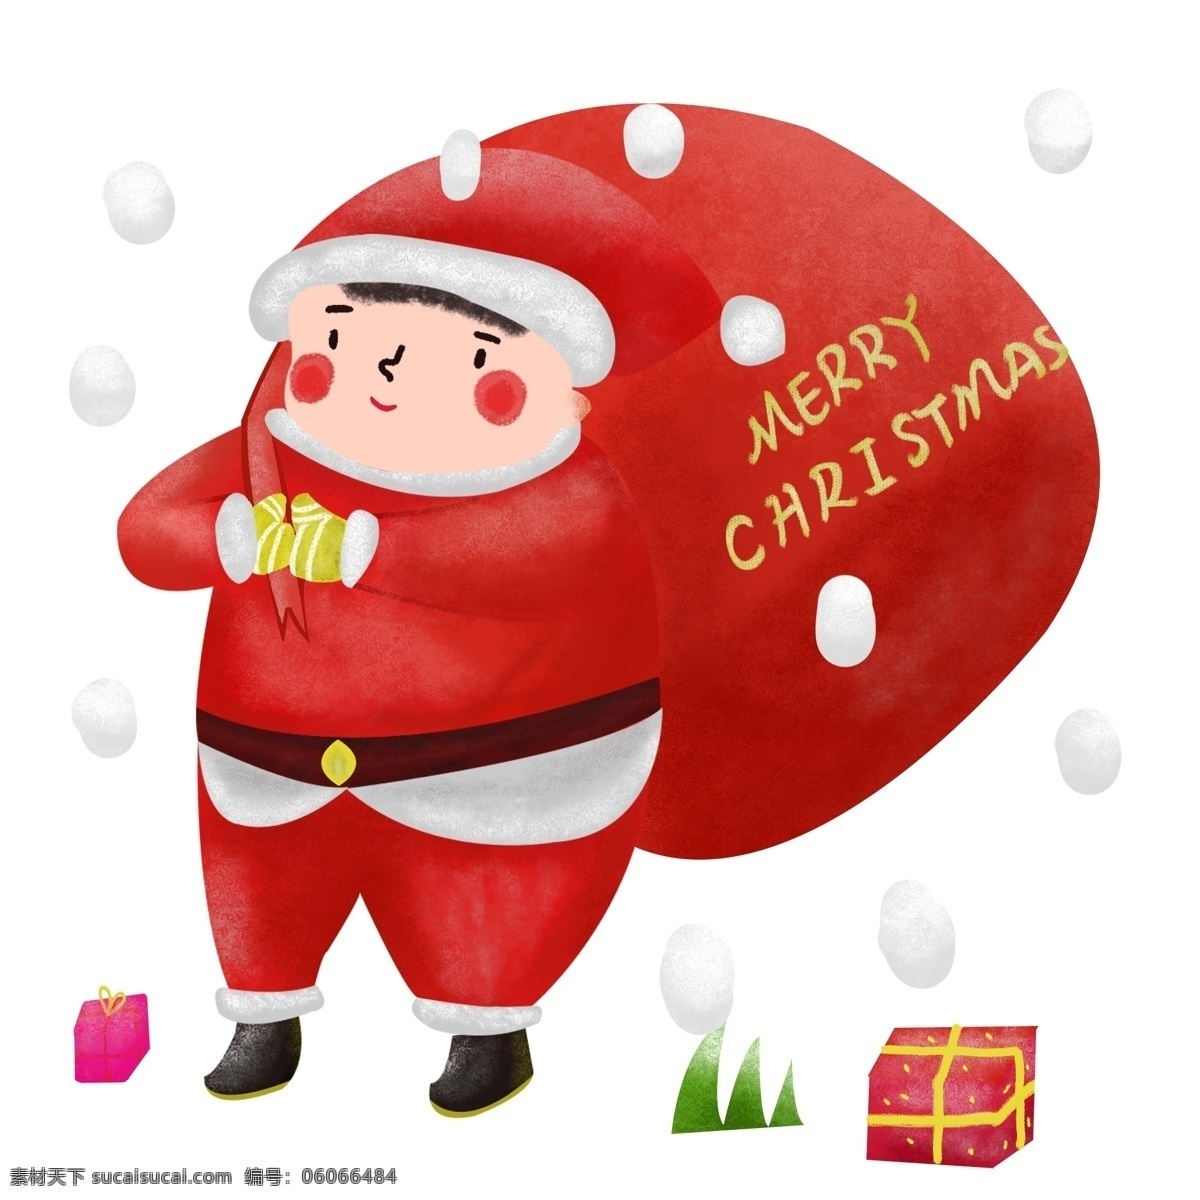 圣诞节 红色 圣诞 礼物 卡通衣服 手绘人物 圣诞快乐 红色的衣服 人物 插画 红色的礼盒